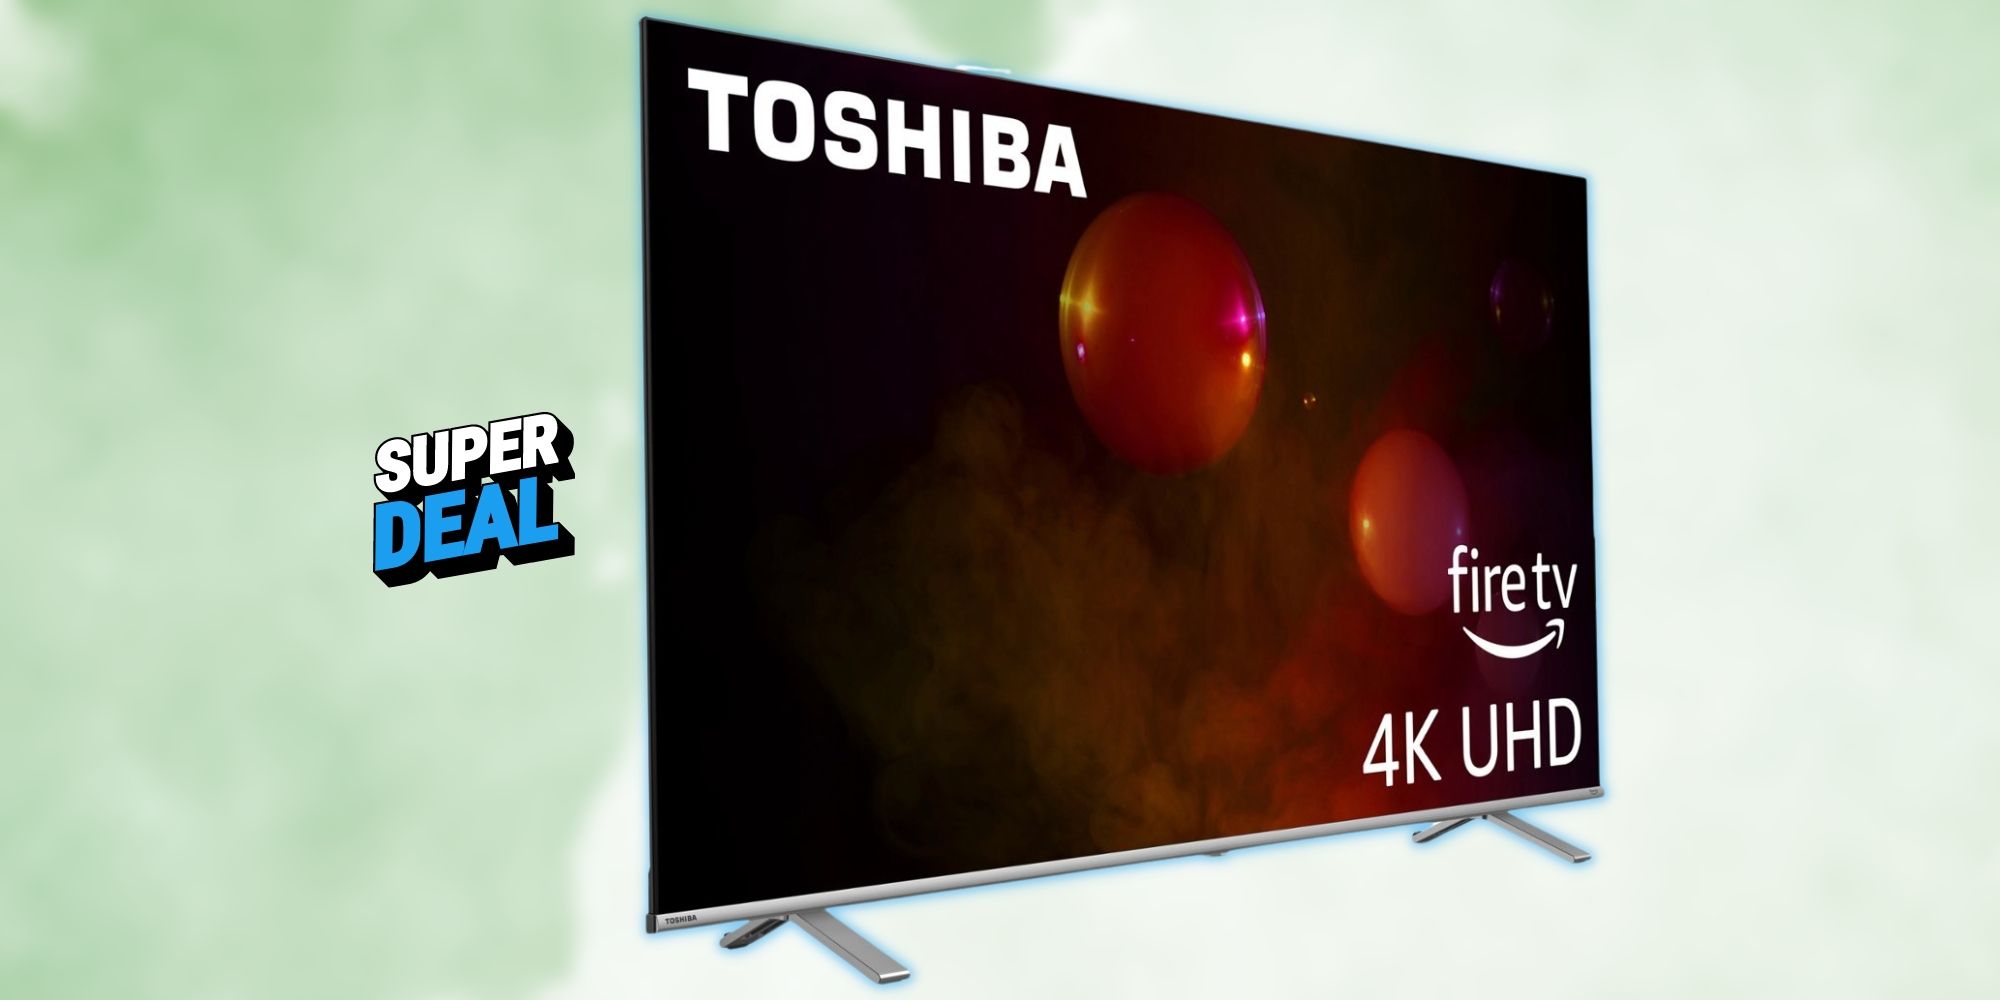 Actúe rápido para ahorrar $ 250 en el Smart Fire TV Clase C350 4K UHD de 75 pulgadas de Toshiba